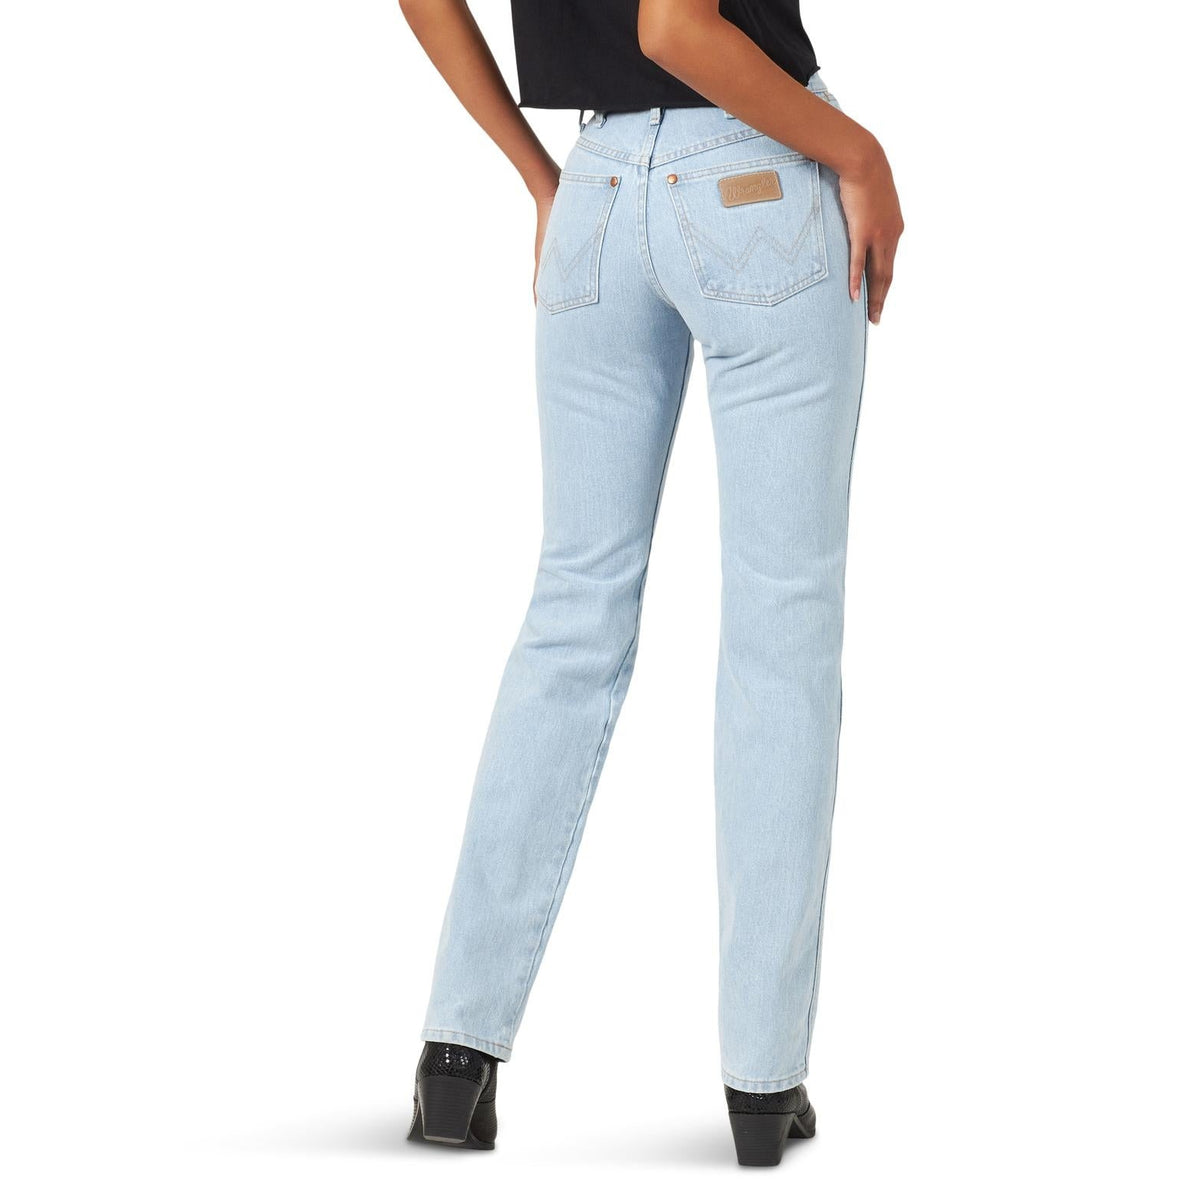 Wrangler Women's Cowboy Cut Slim Fit Jean in Bleach Wash